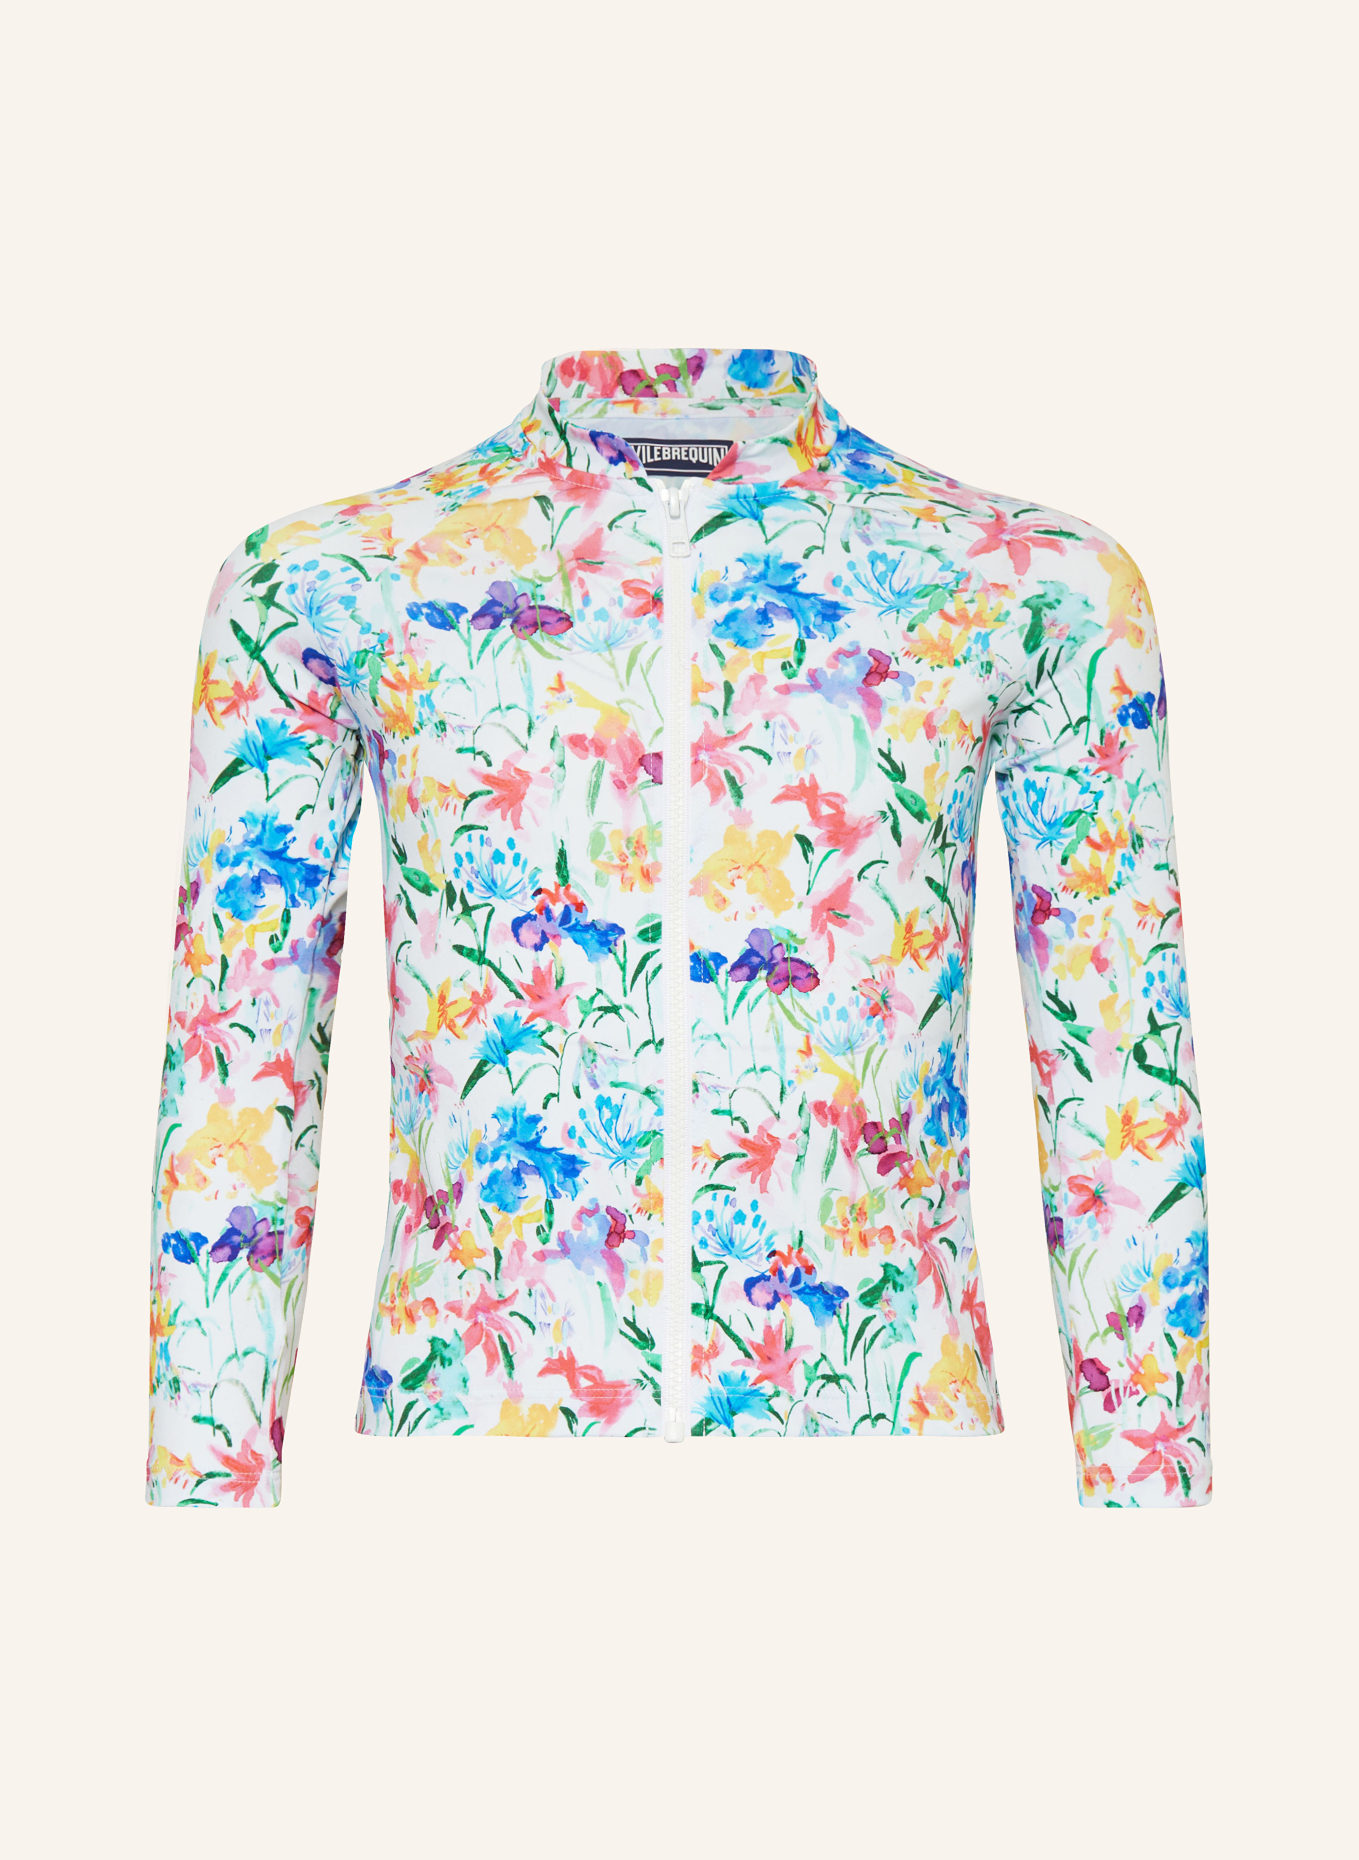 VILEBREQUIN UV-Shirt HAPPY FLOWERS mit UV-Schutz 50+, Farbe: WEISS/ BLAU/ GELB (Bild 1)